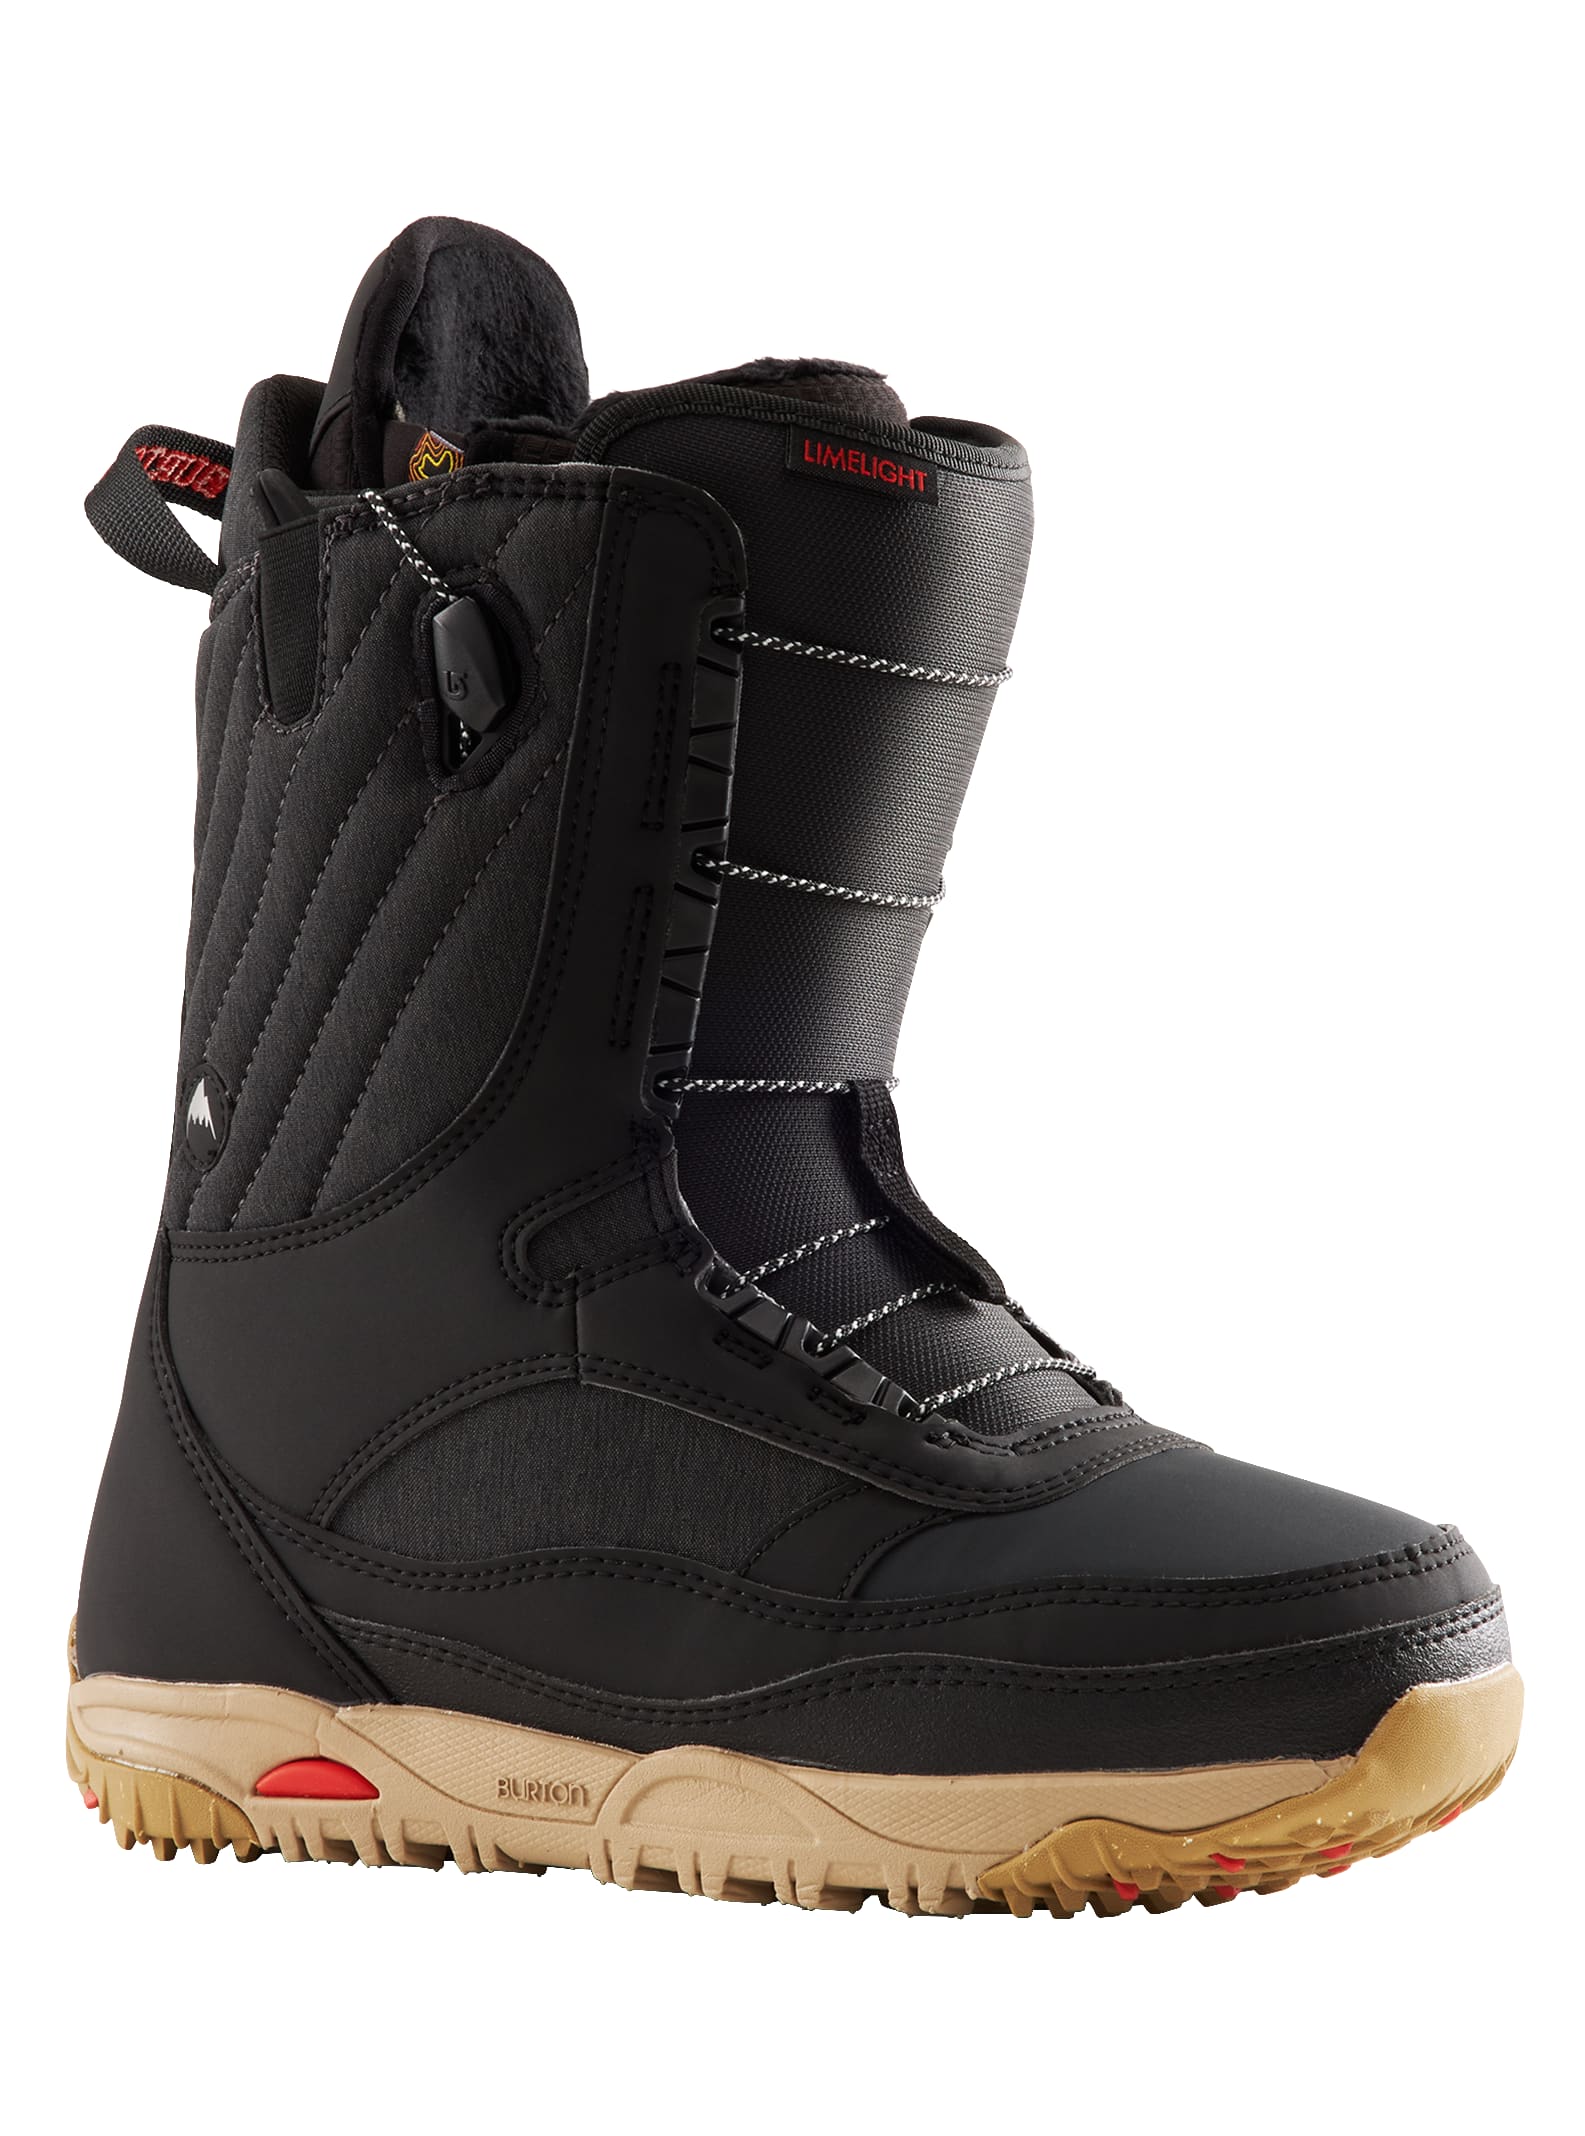 Burton - Boots de snowboard Limelight pour femme, Black, 5.0